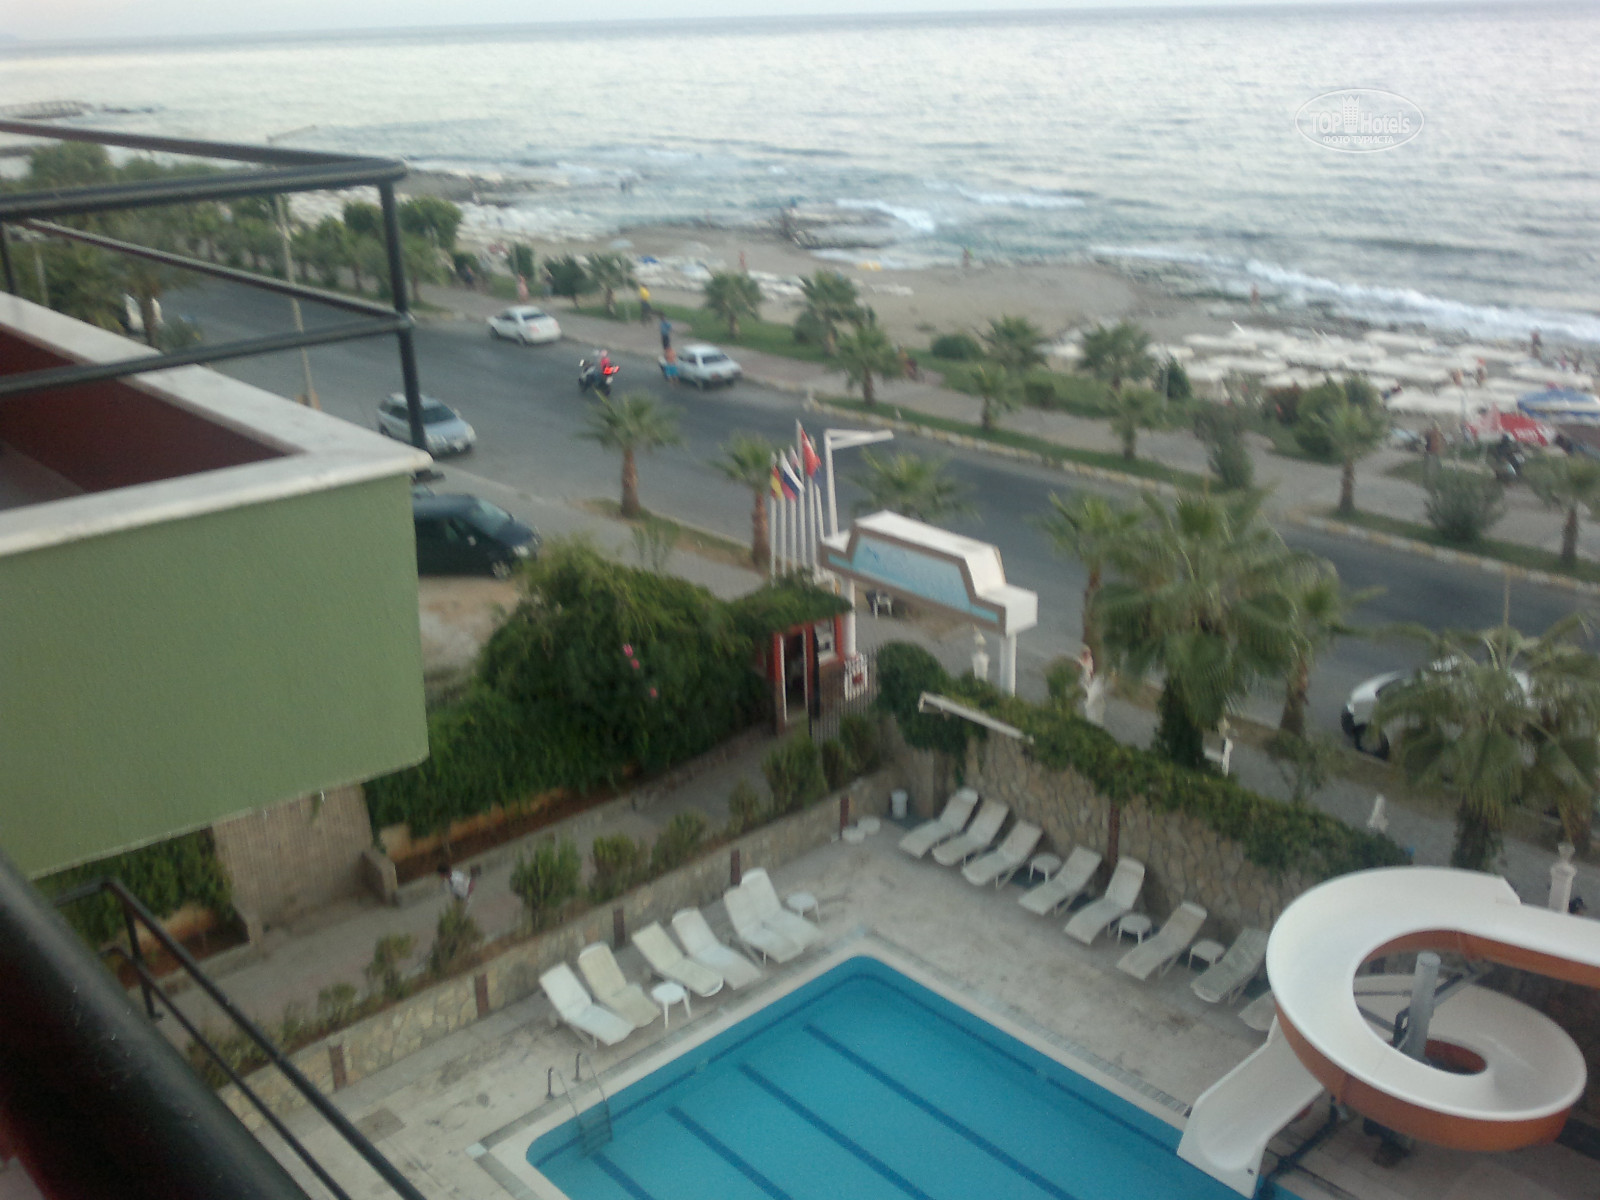 Club bayar beach 4. Турция,Аланья,Club Bayar Beach Hotel. Club Hotel Bayar 3*. Club Bayar Beach (ex. Minerva). Club Bayar Beach Hotel 4.